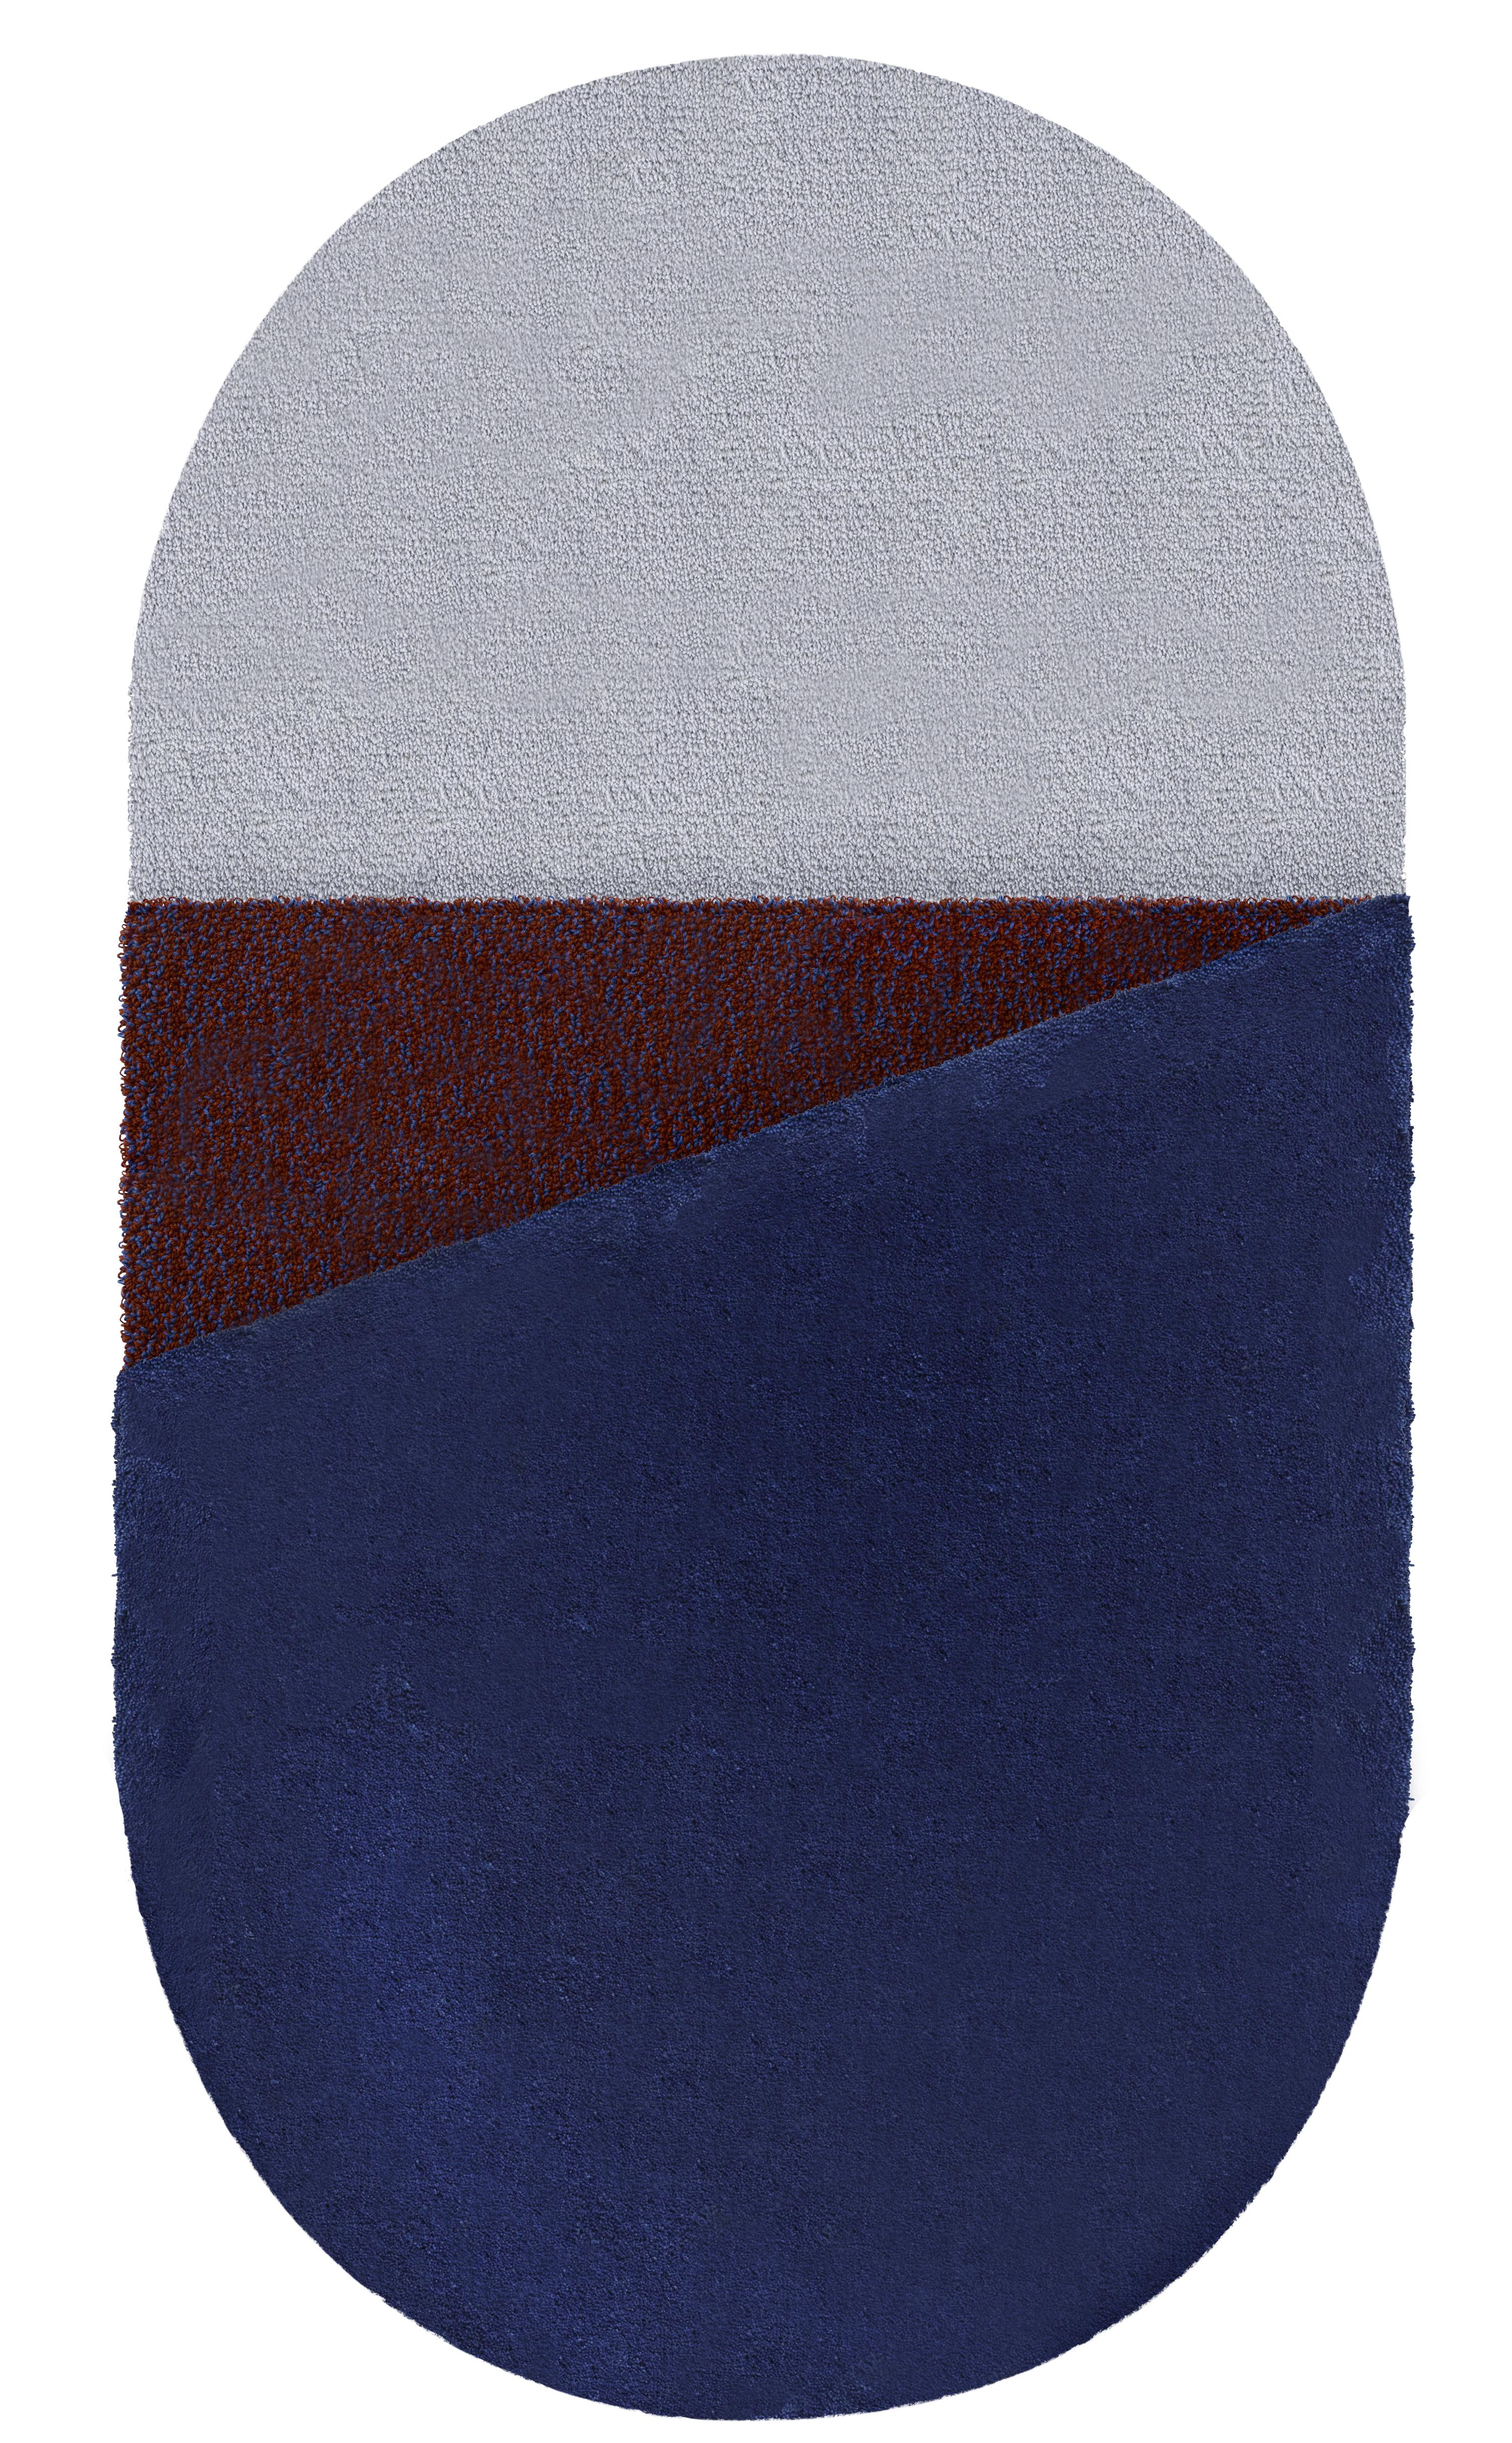 Großer blauer teppich Oci rechts von Seraina Lareida
Abmessungen: B 150 x H 280 cm 
MATERIALIEN: 100% New Zeland Wolle bester Qualität.
Erhältlich in den Größen Small und Medium. Auch in folgenden Farben erhältlich: Brick/Pink, Gelb/Grau,